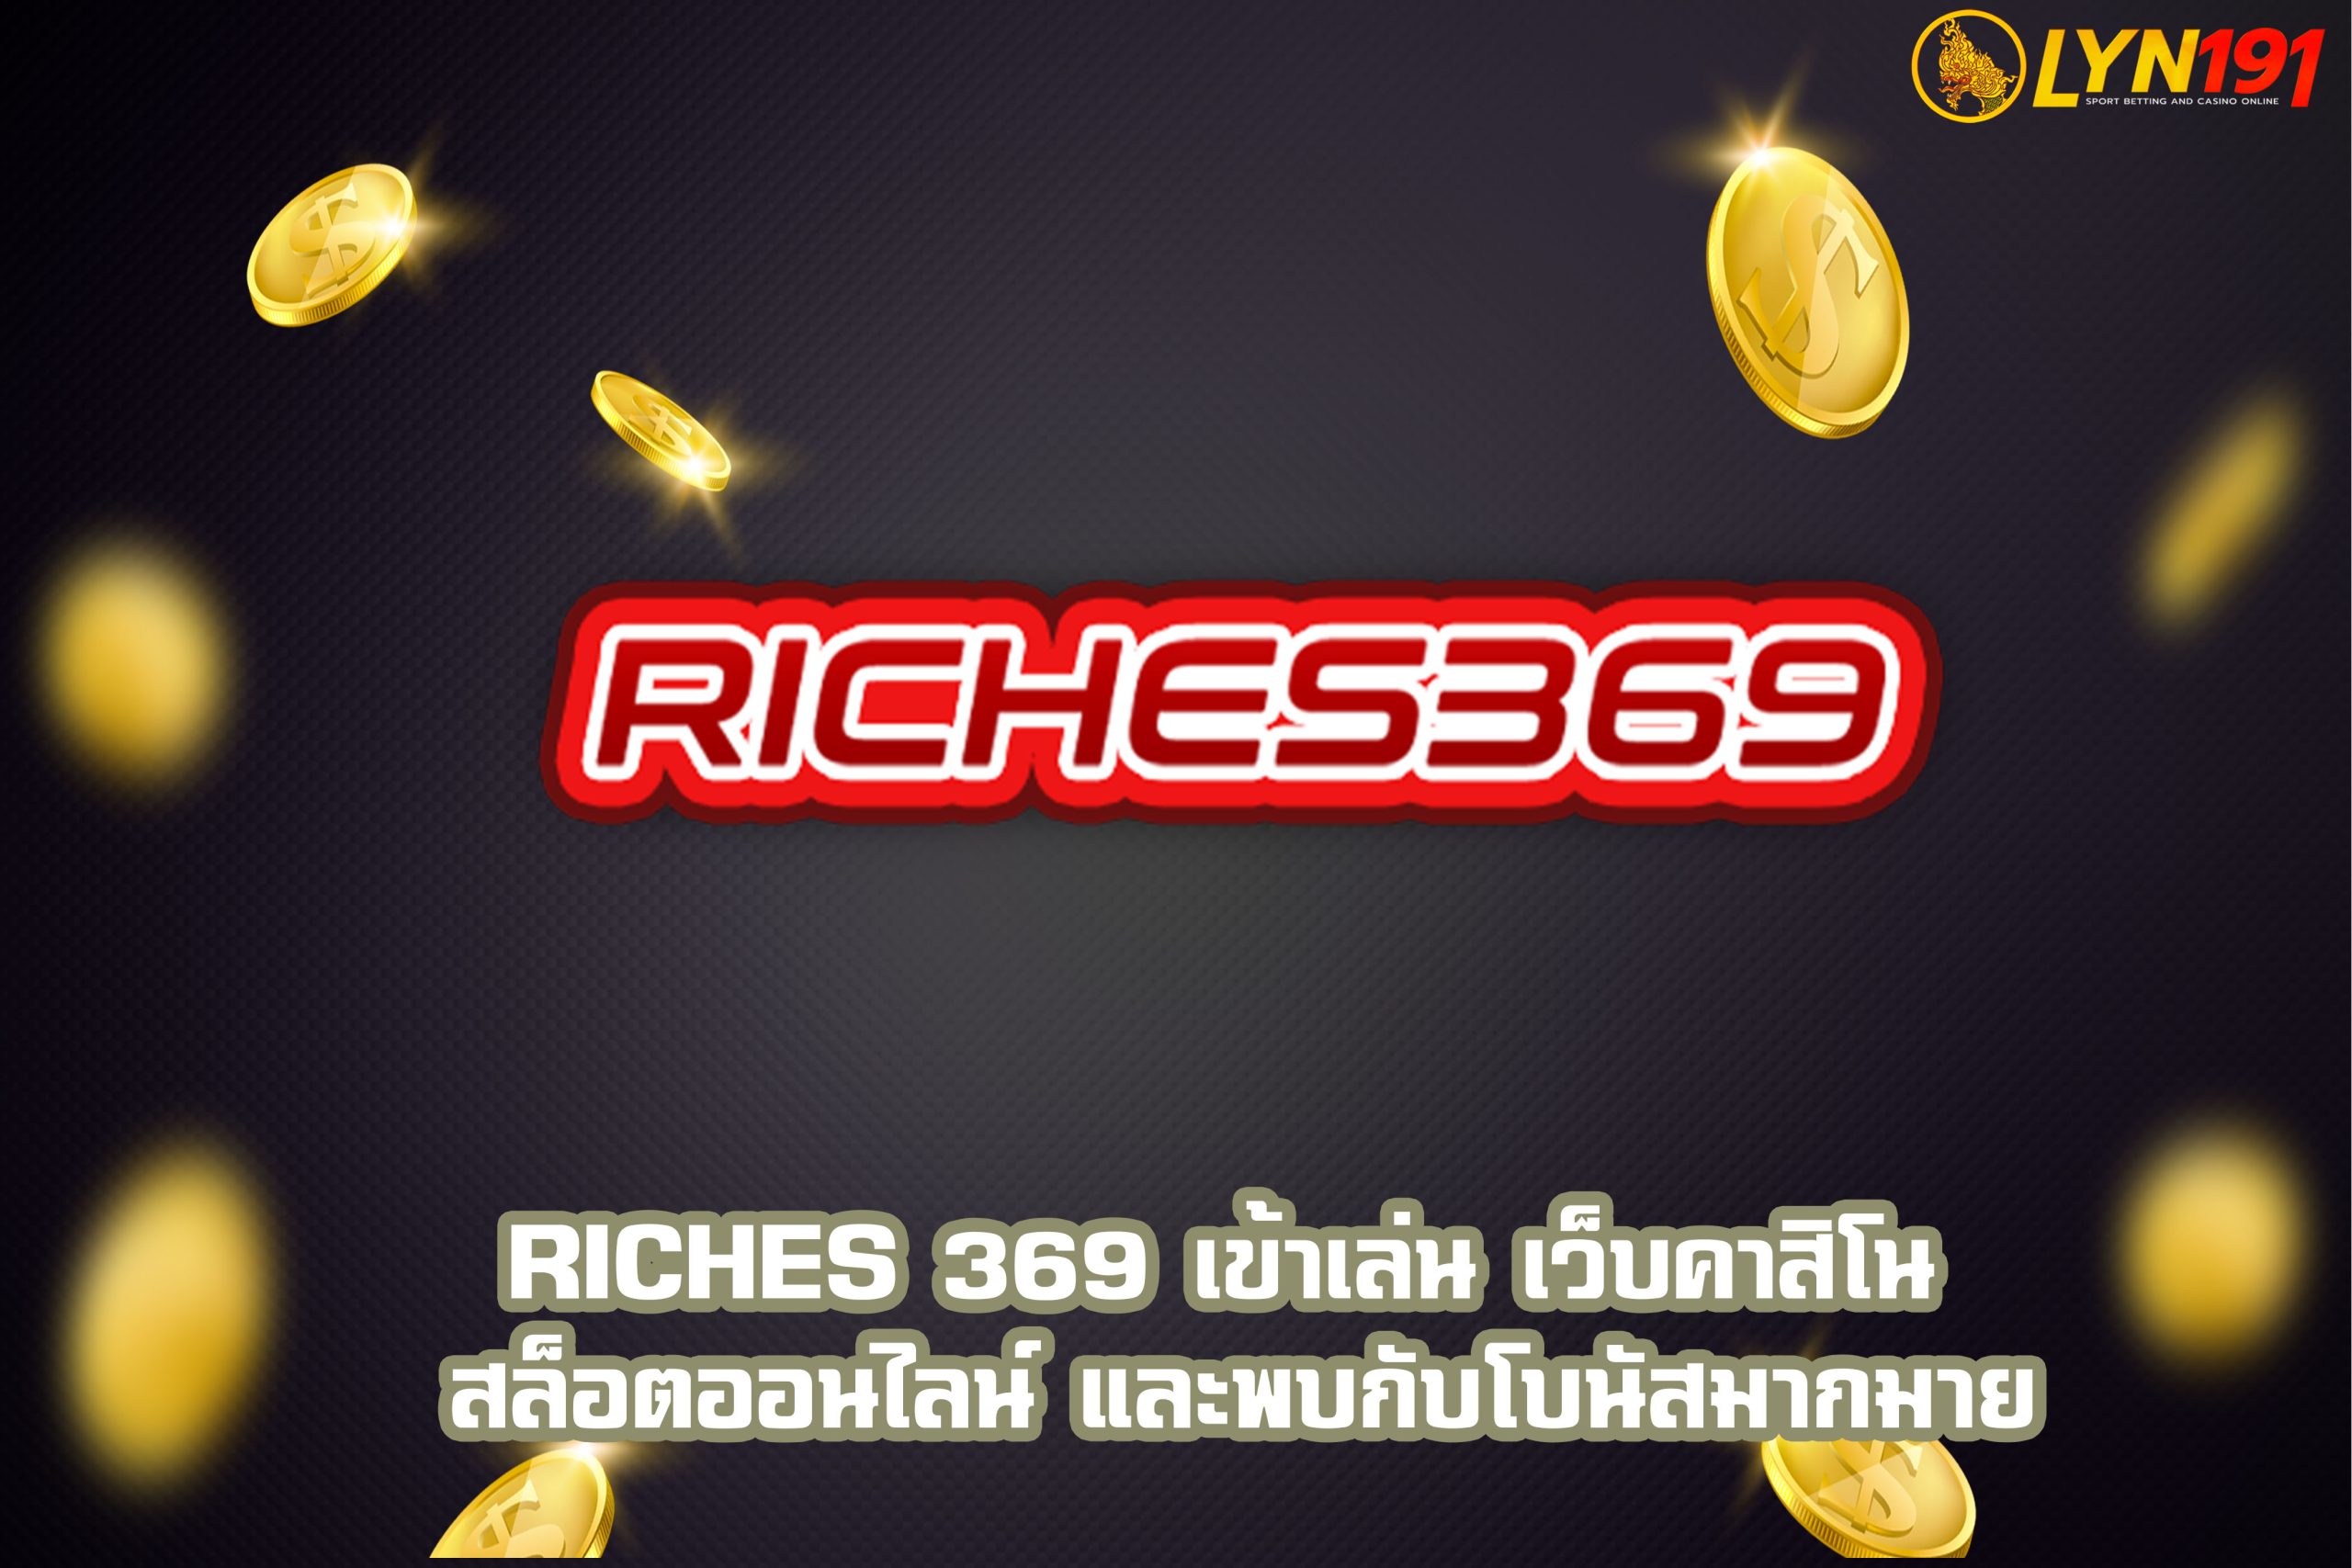 Riches 369 เข้าเล่น เว็บคาสิโน สล็อตออนไลน์ และพบกับโบนัสมากมาย